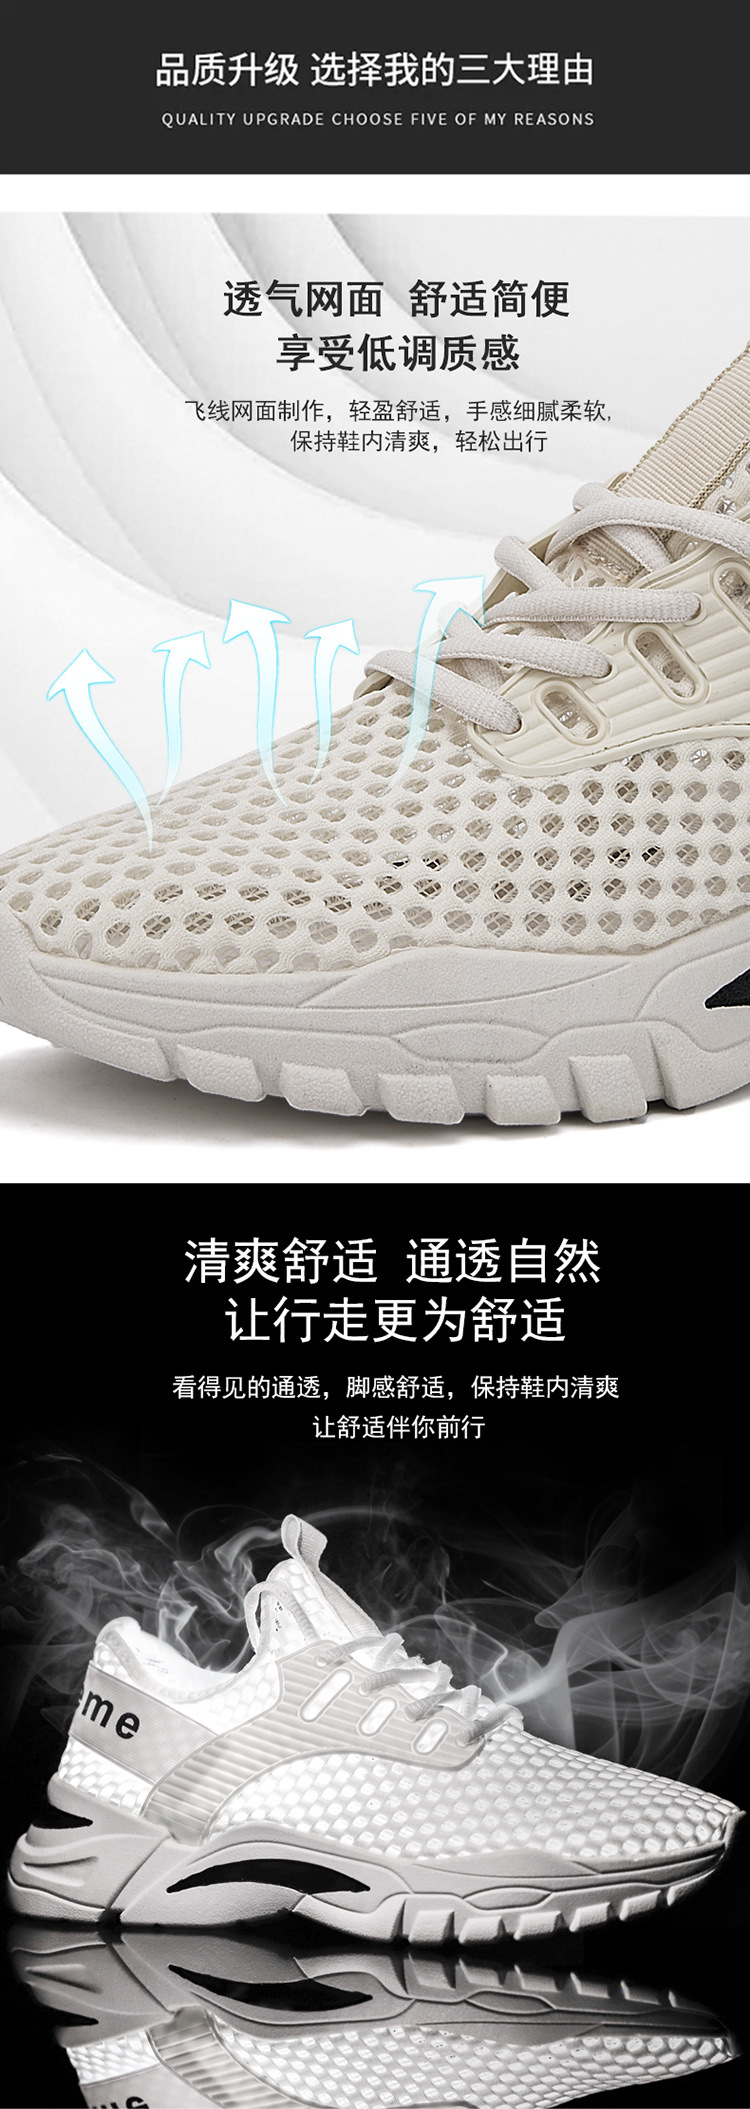 XP2020新款夏季网鞋透气百搭运动鞋男士休闲鞋韩版网面潮流男鞋